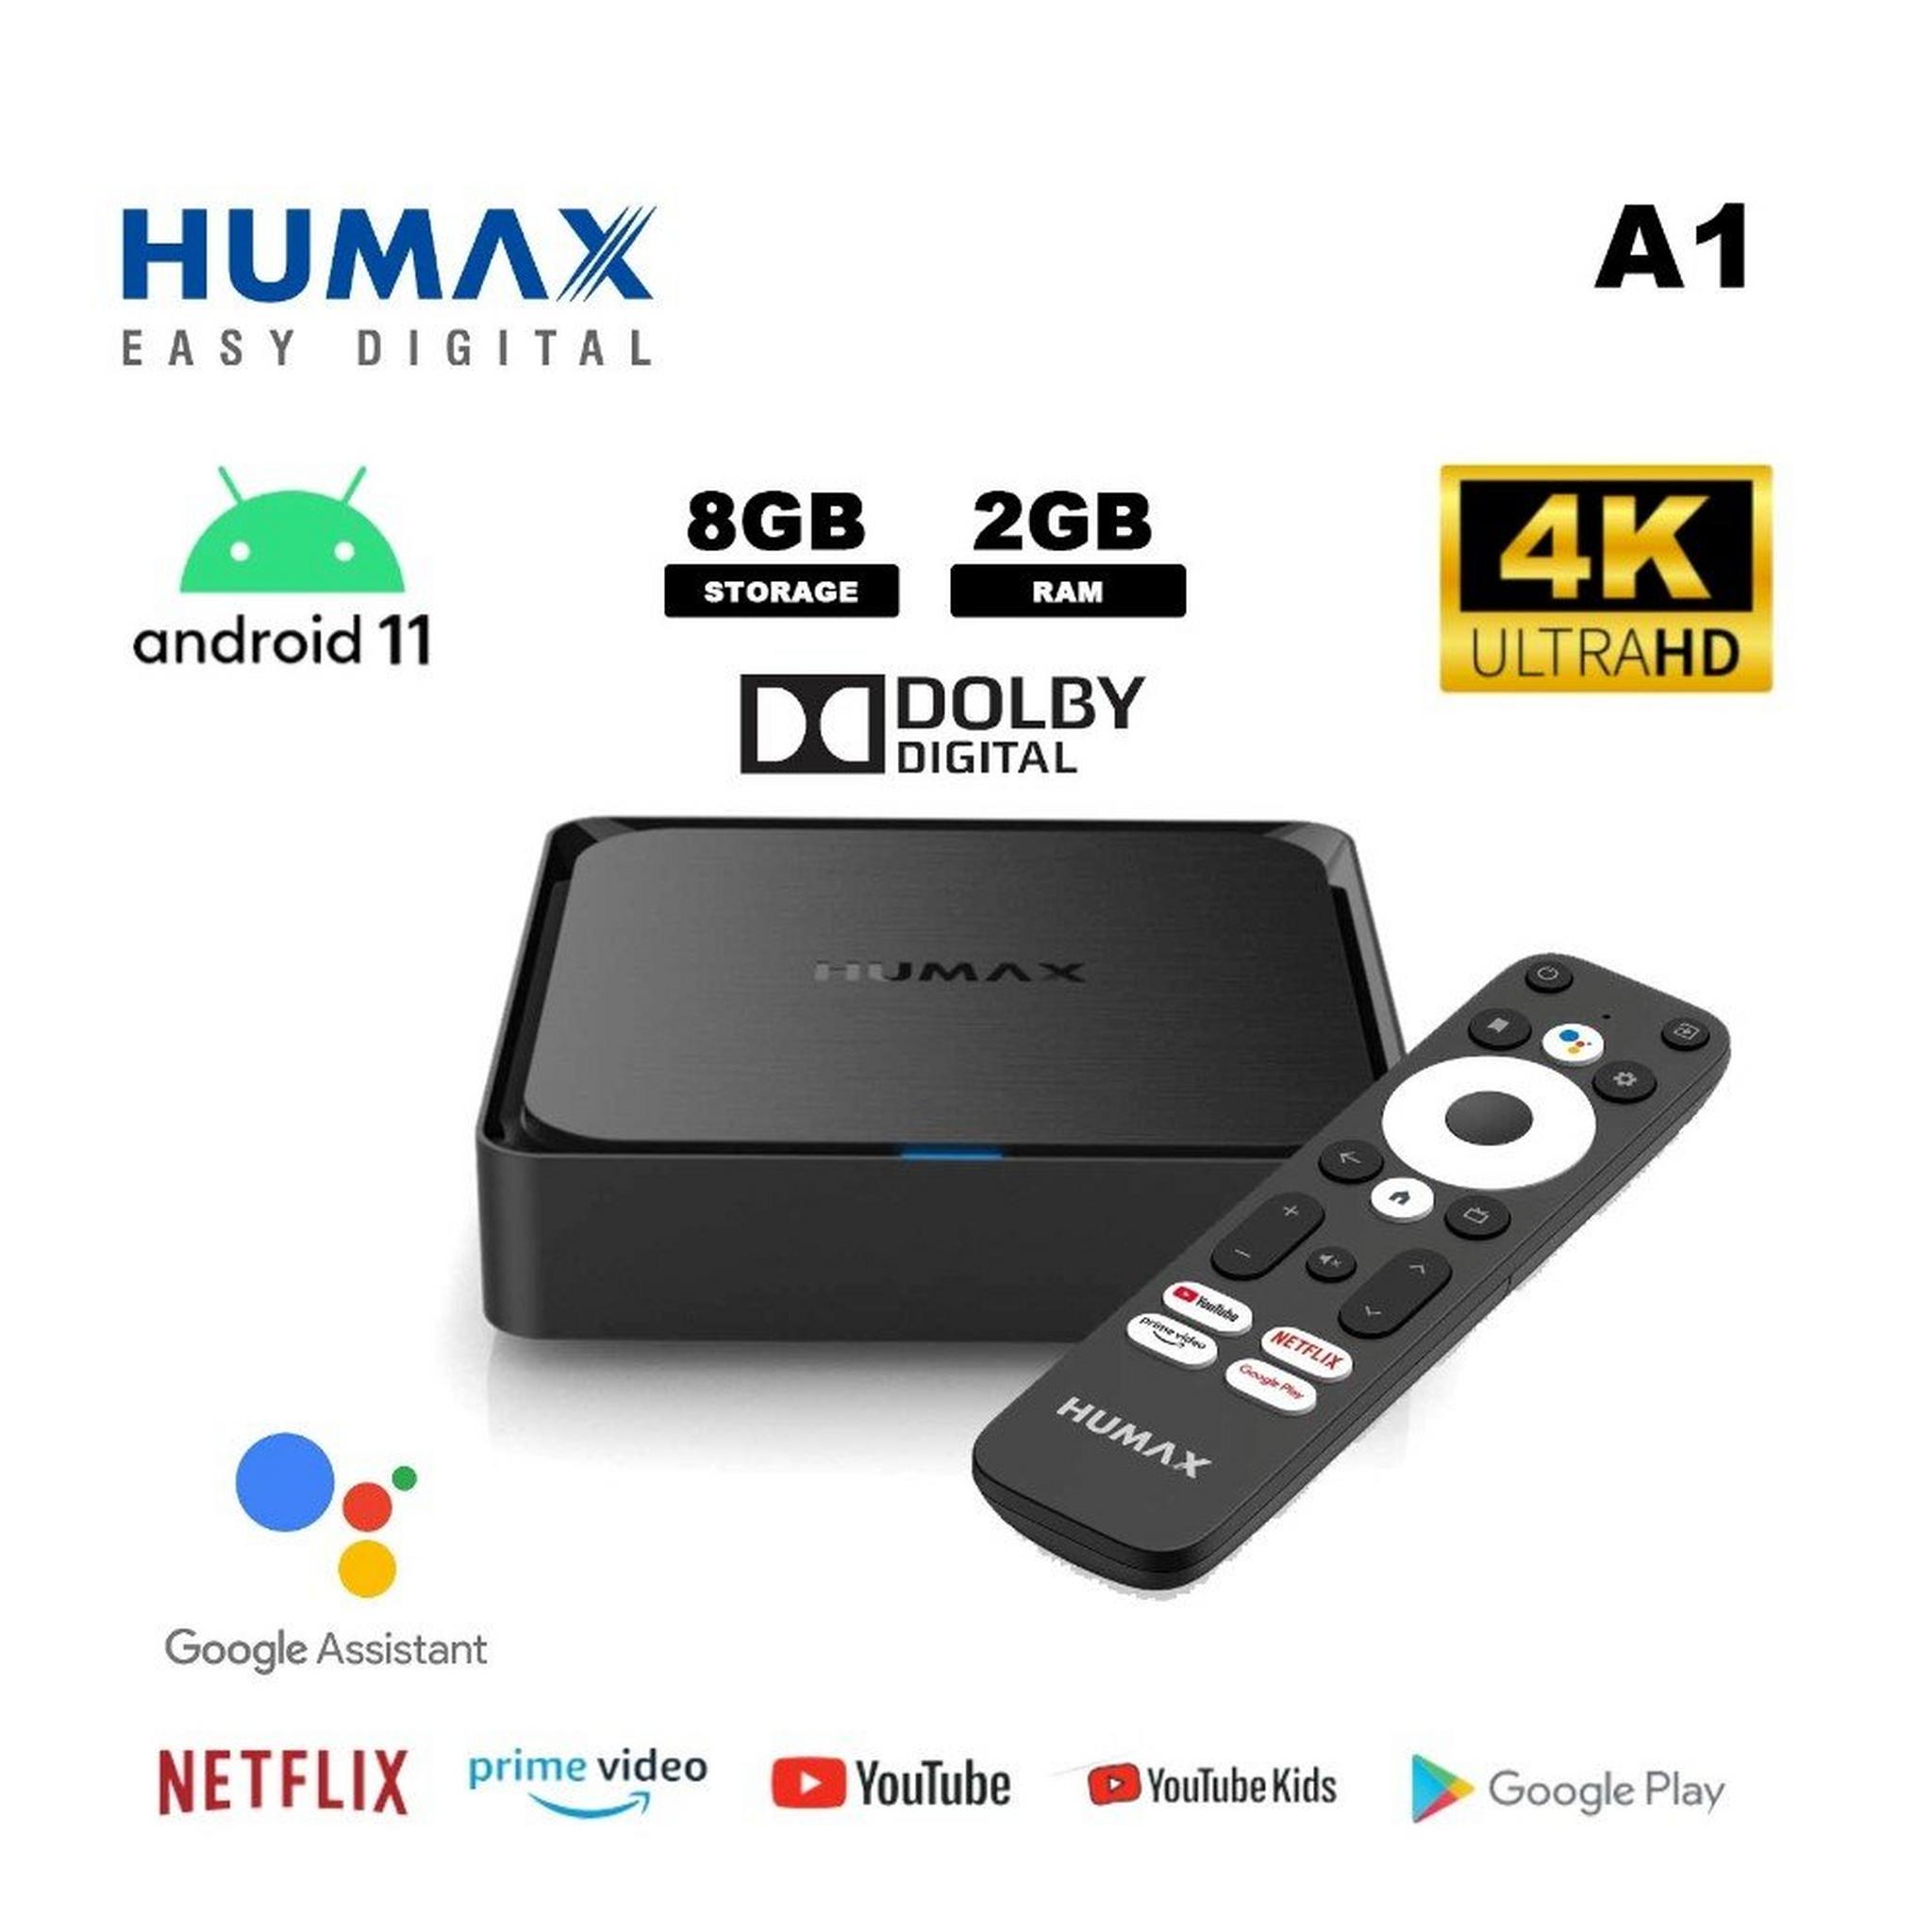 Humax Android TV Box A1